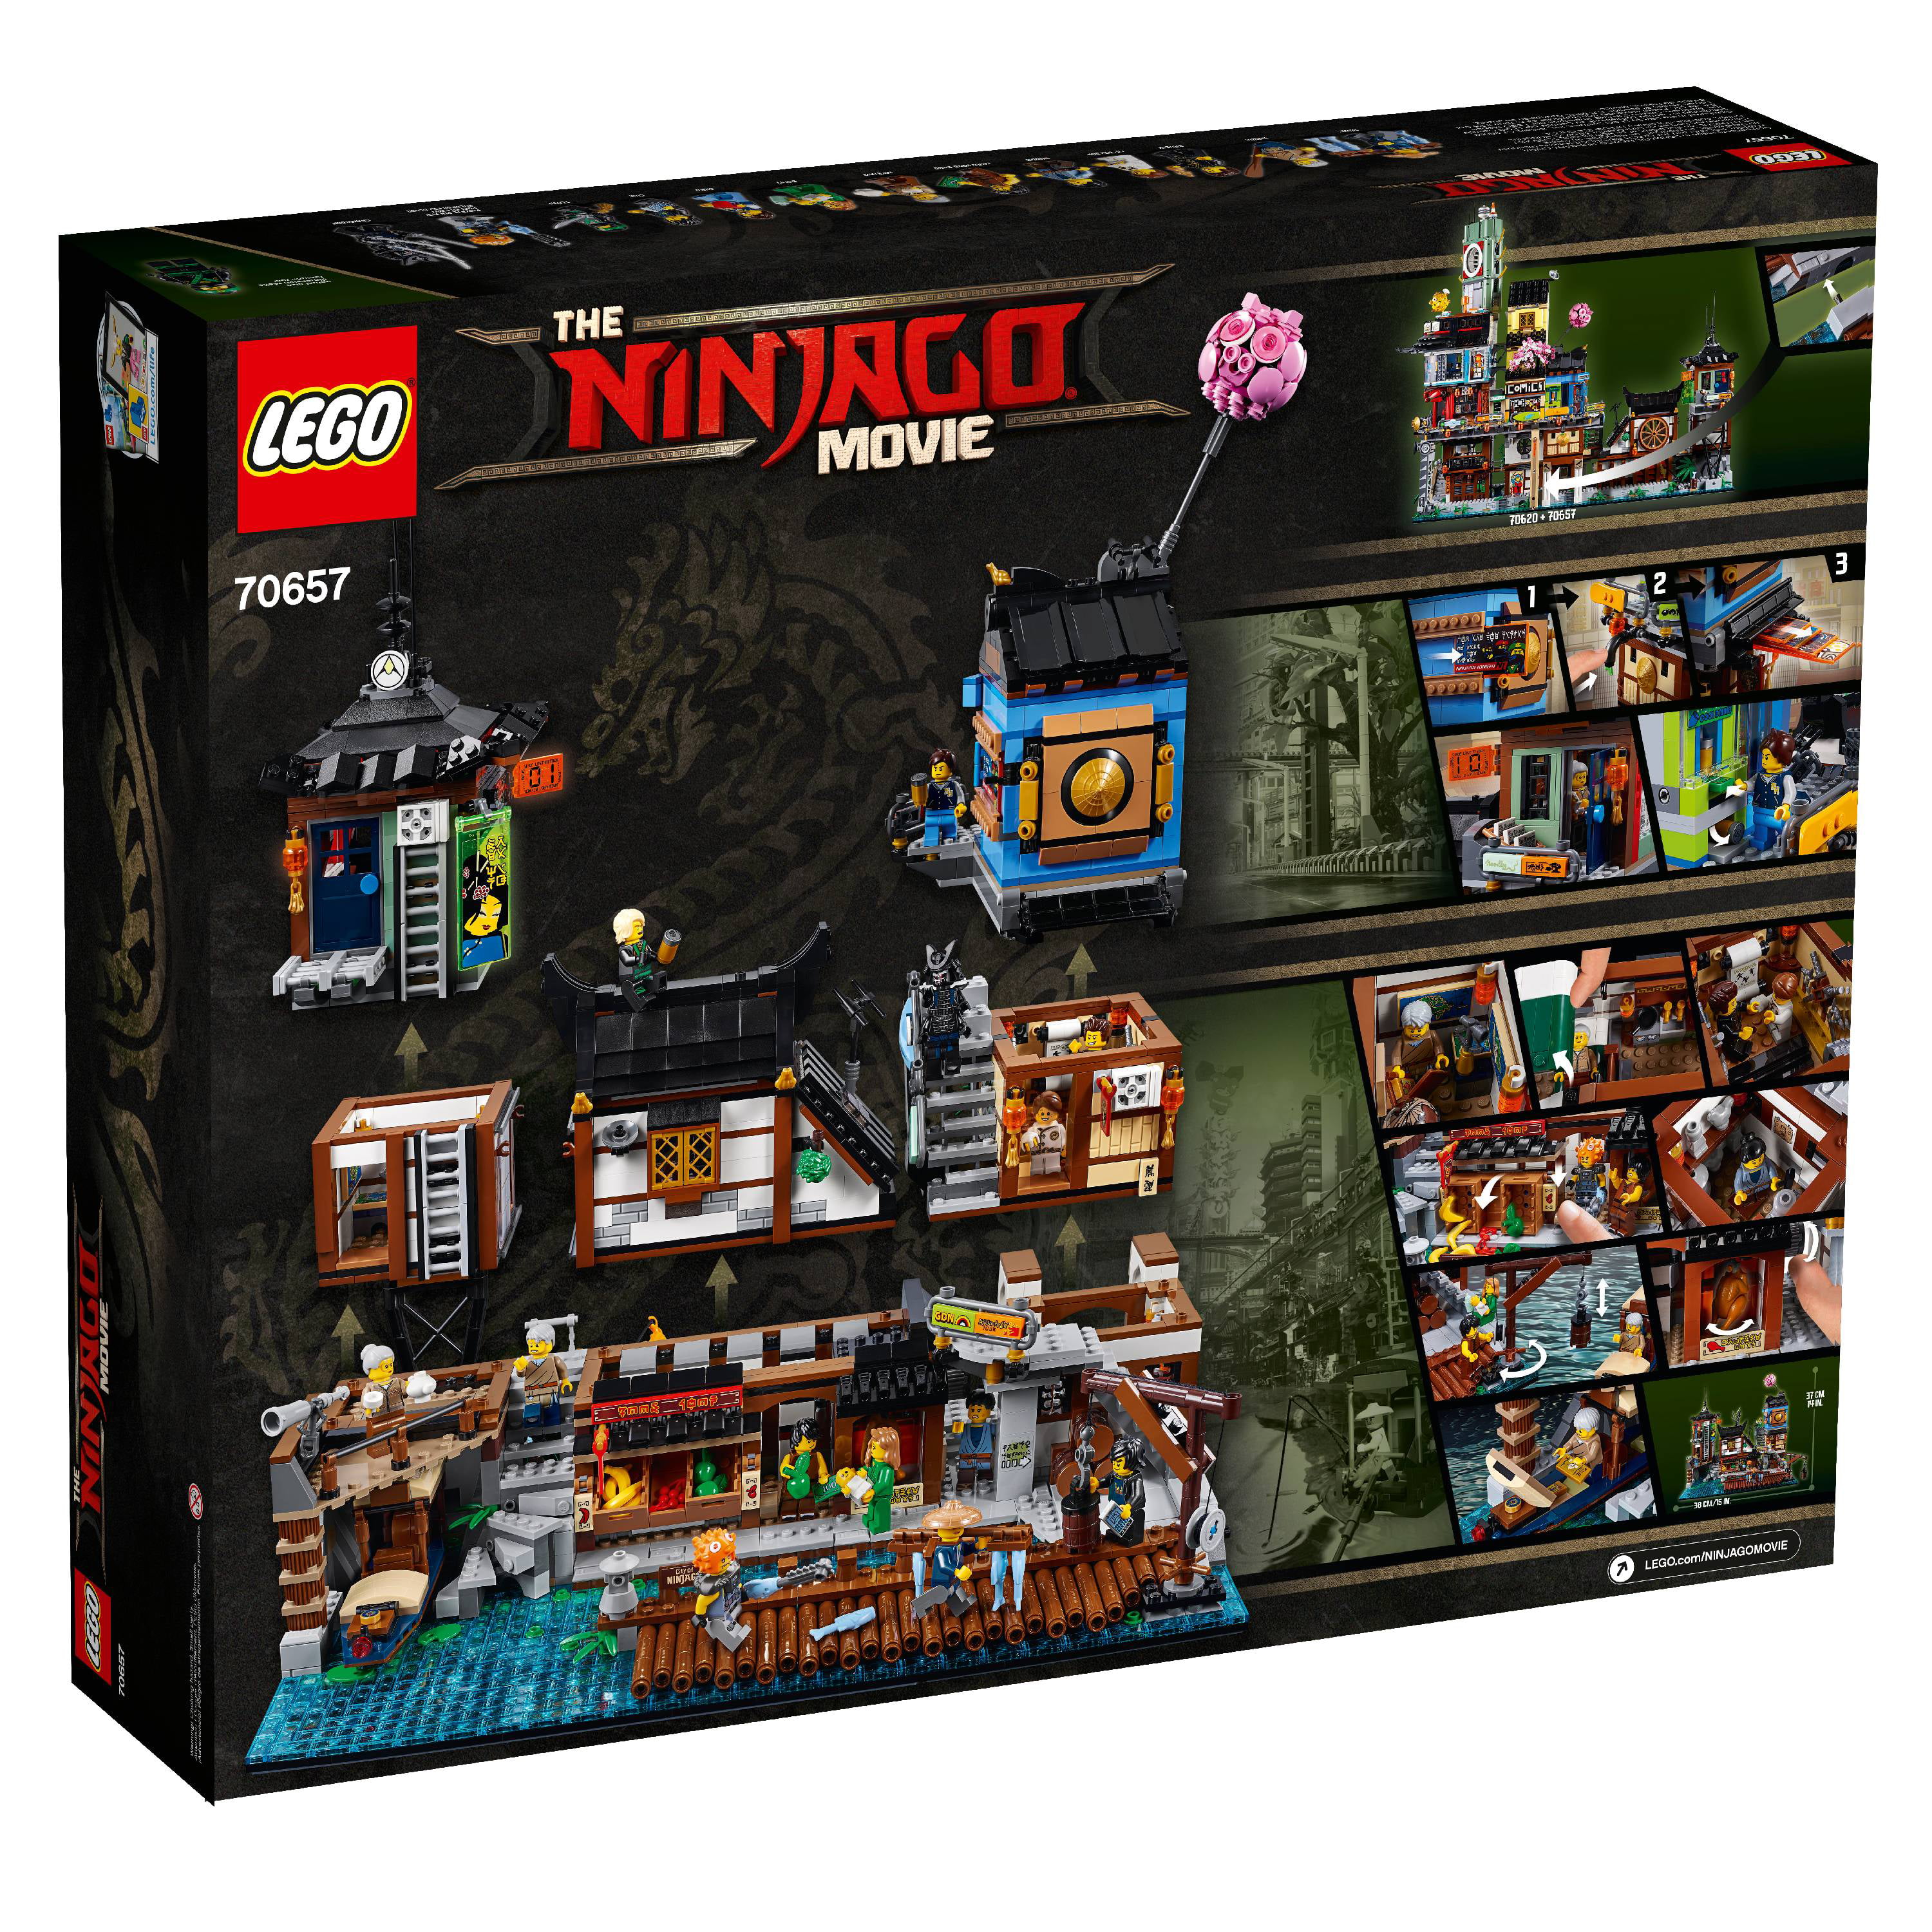 Rige Bære flov LEGO Ninjago NINJAGO City Docks 70657 - Walmart.com